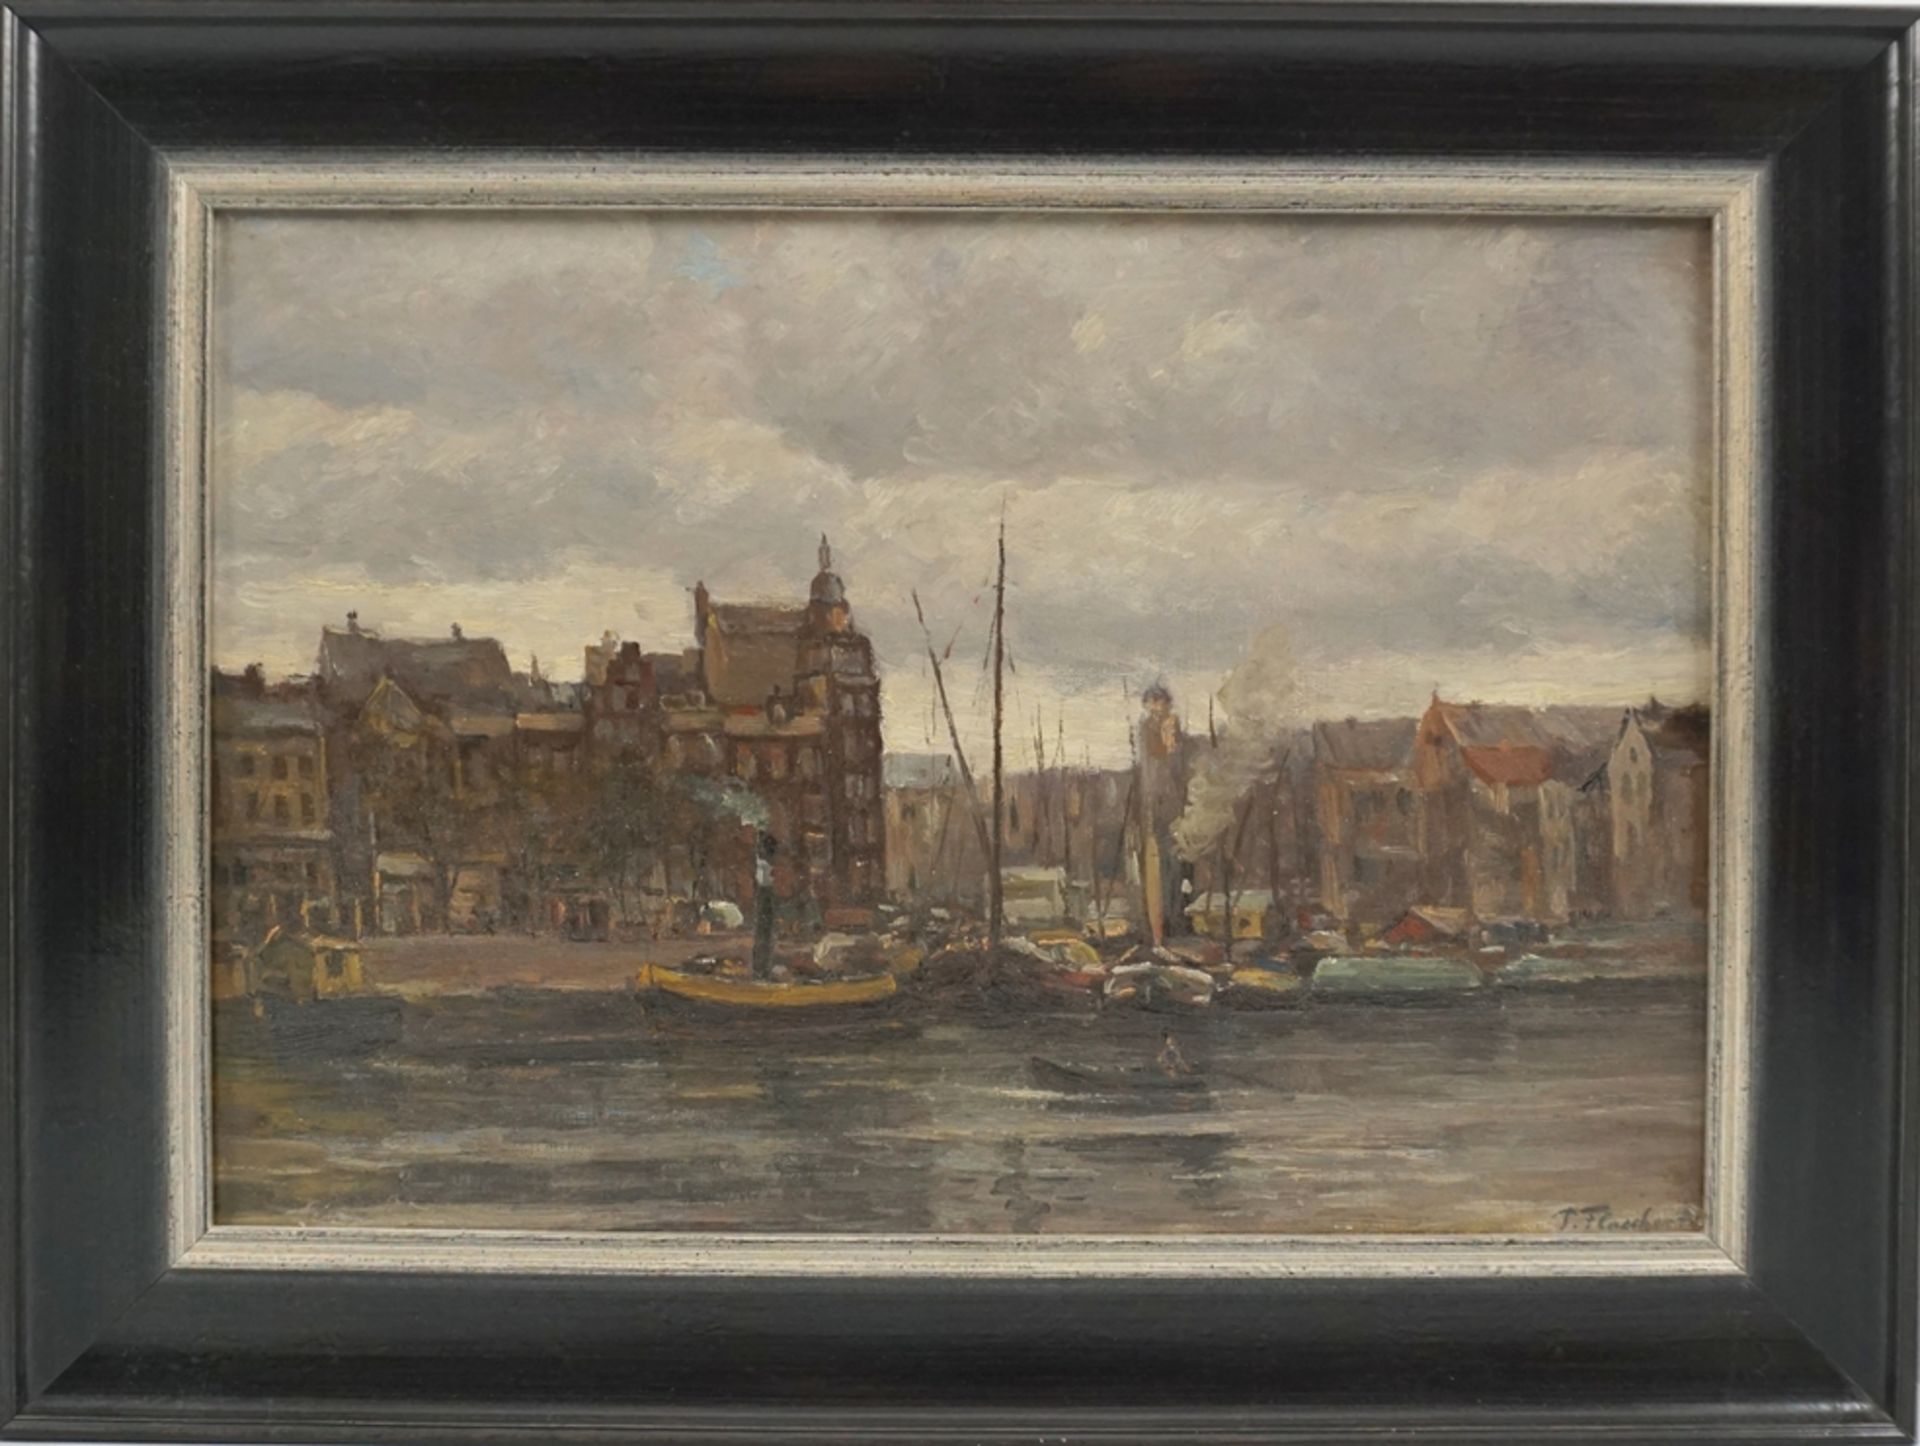 unidentifizierter Künstler "Prins Hendrikkade in Amsterdam", datiert 1913